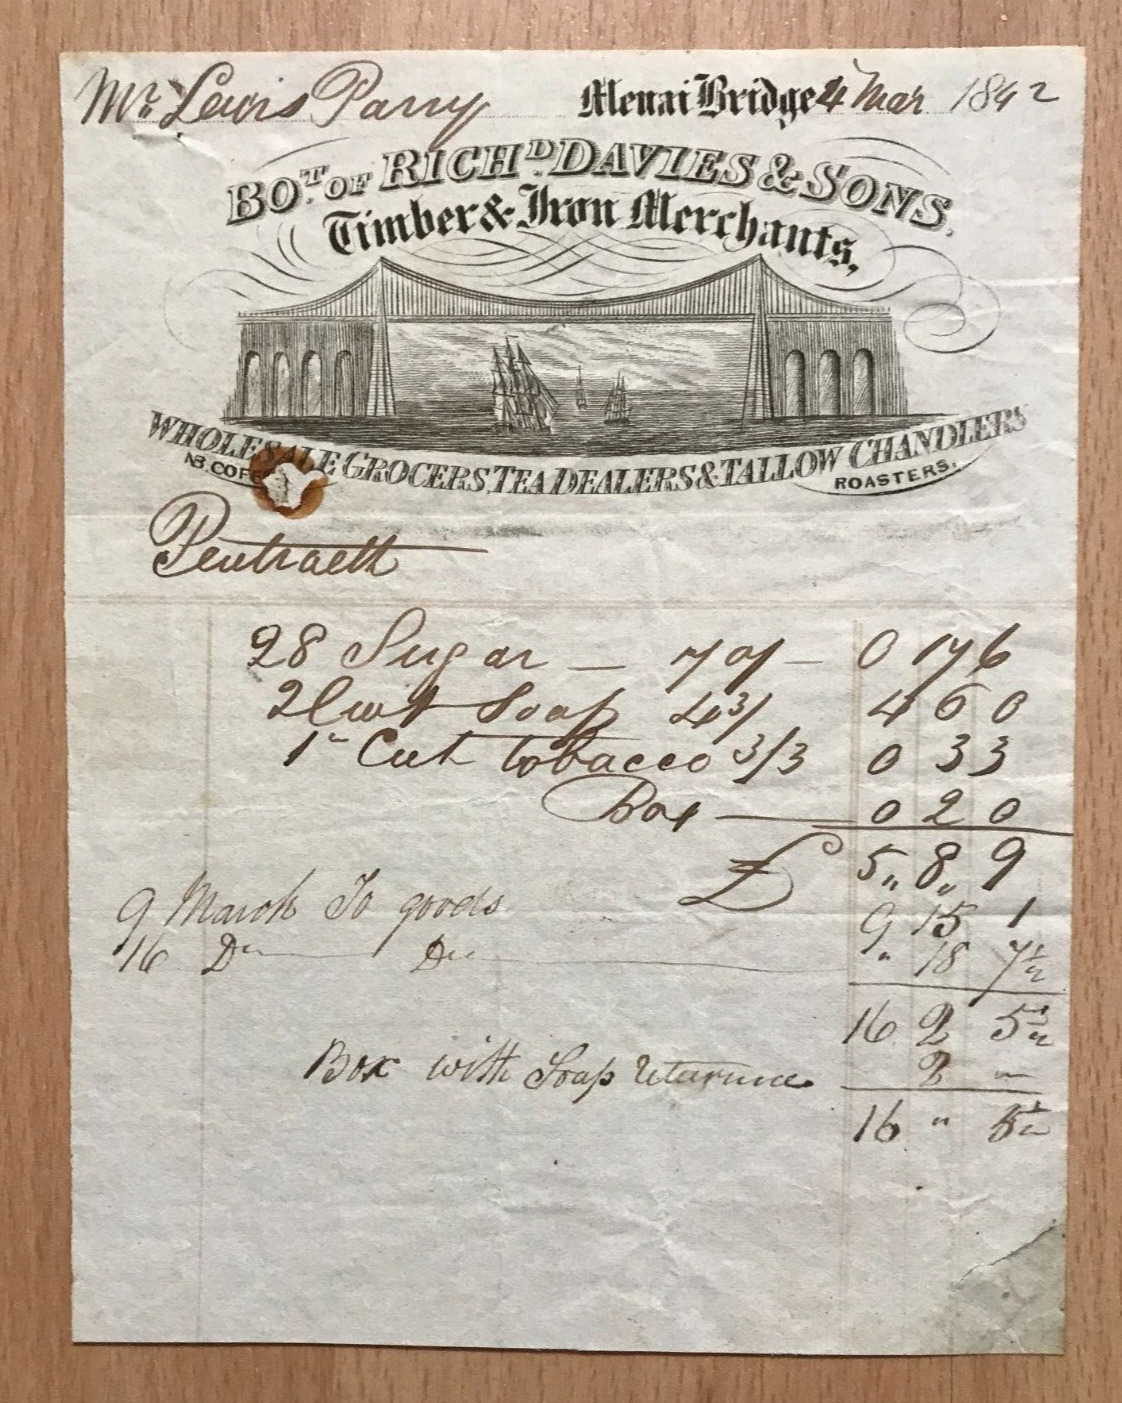 1842 invoice Richard Davies & sons Menai Bridge  Grocers, tea dealers, chandlers